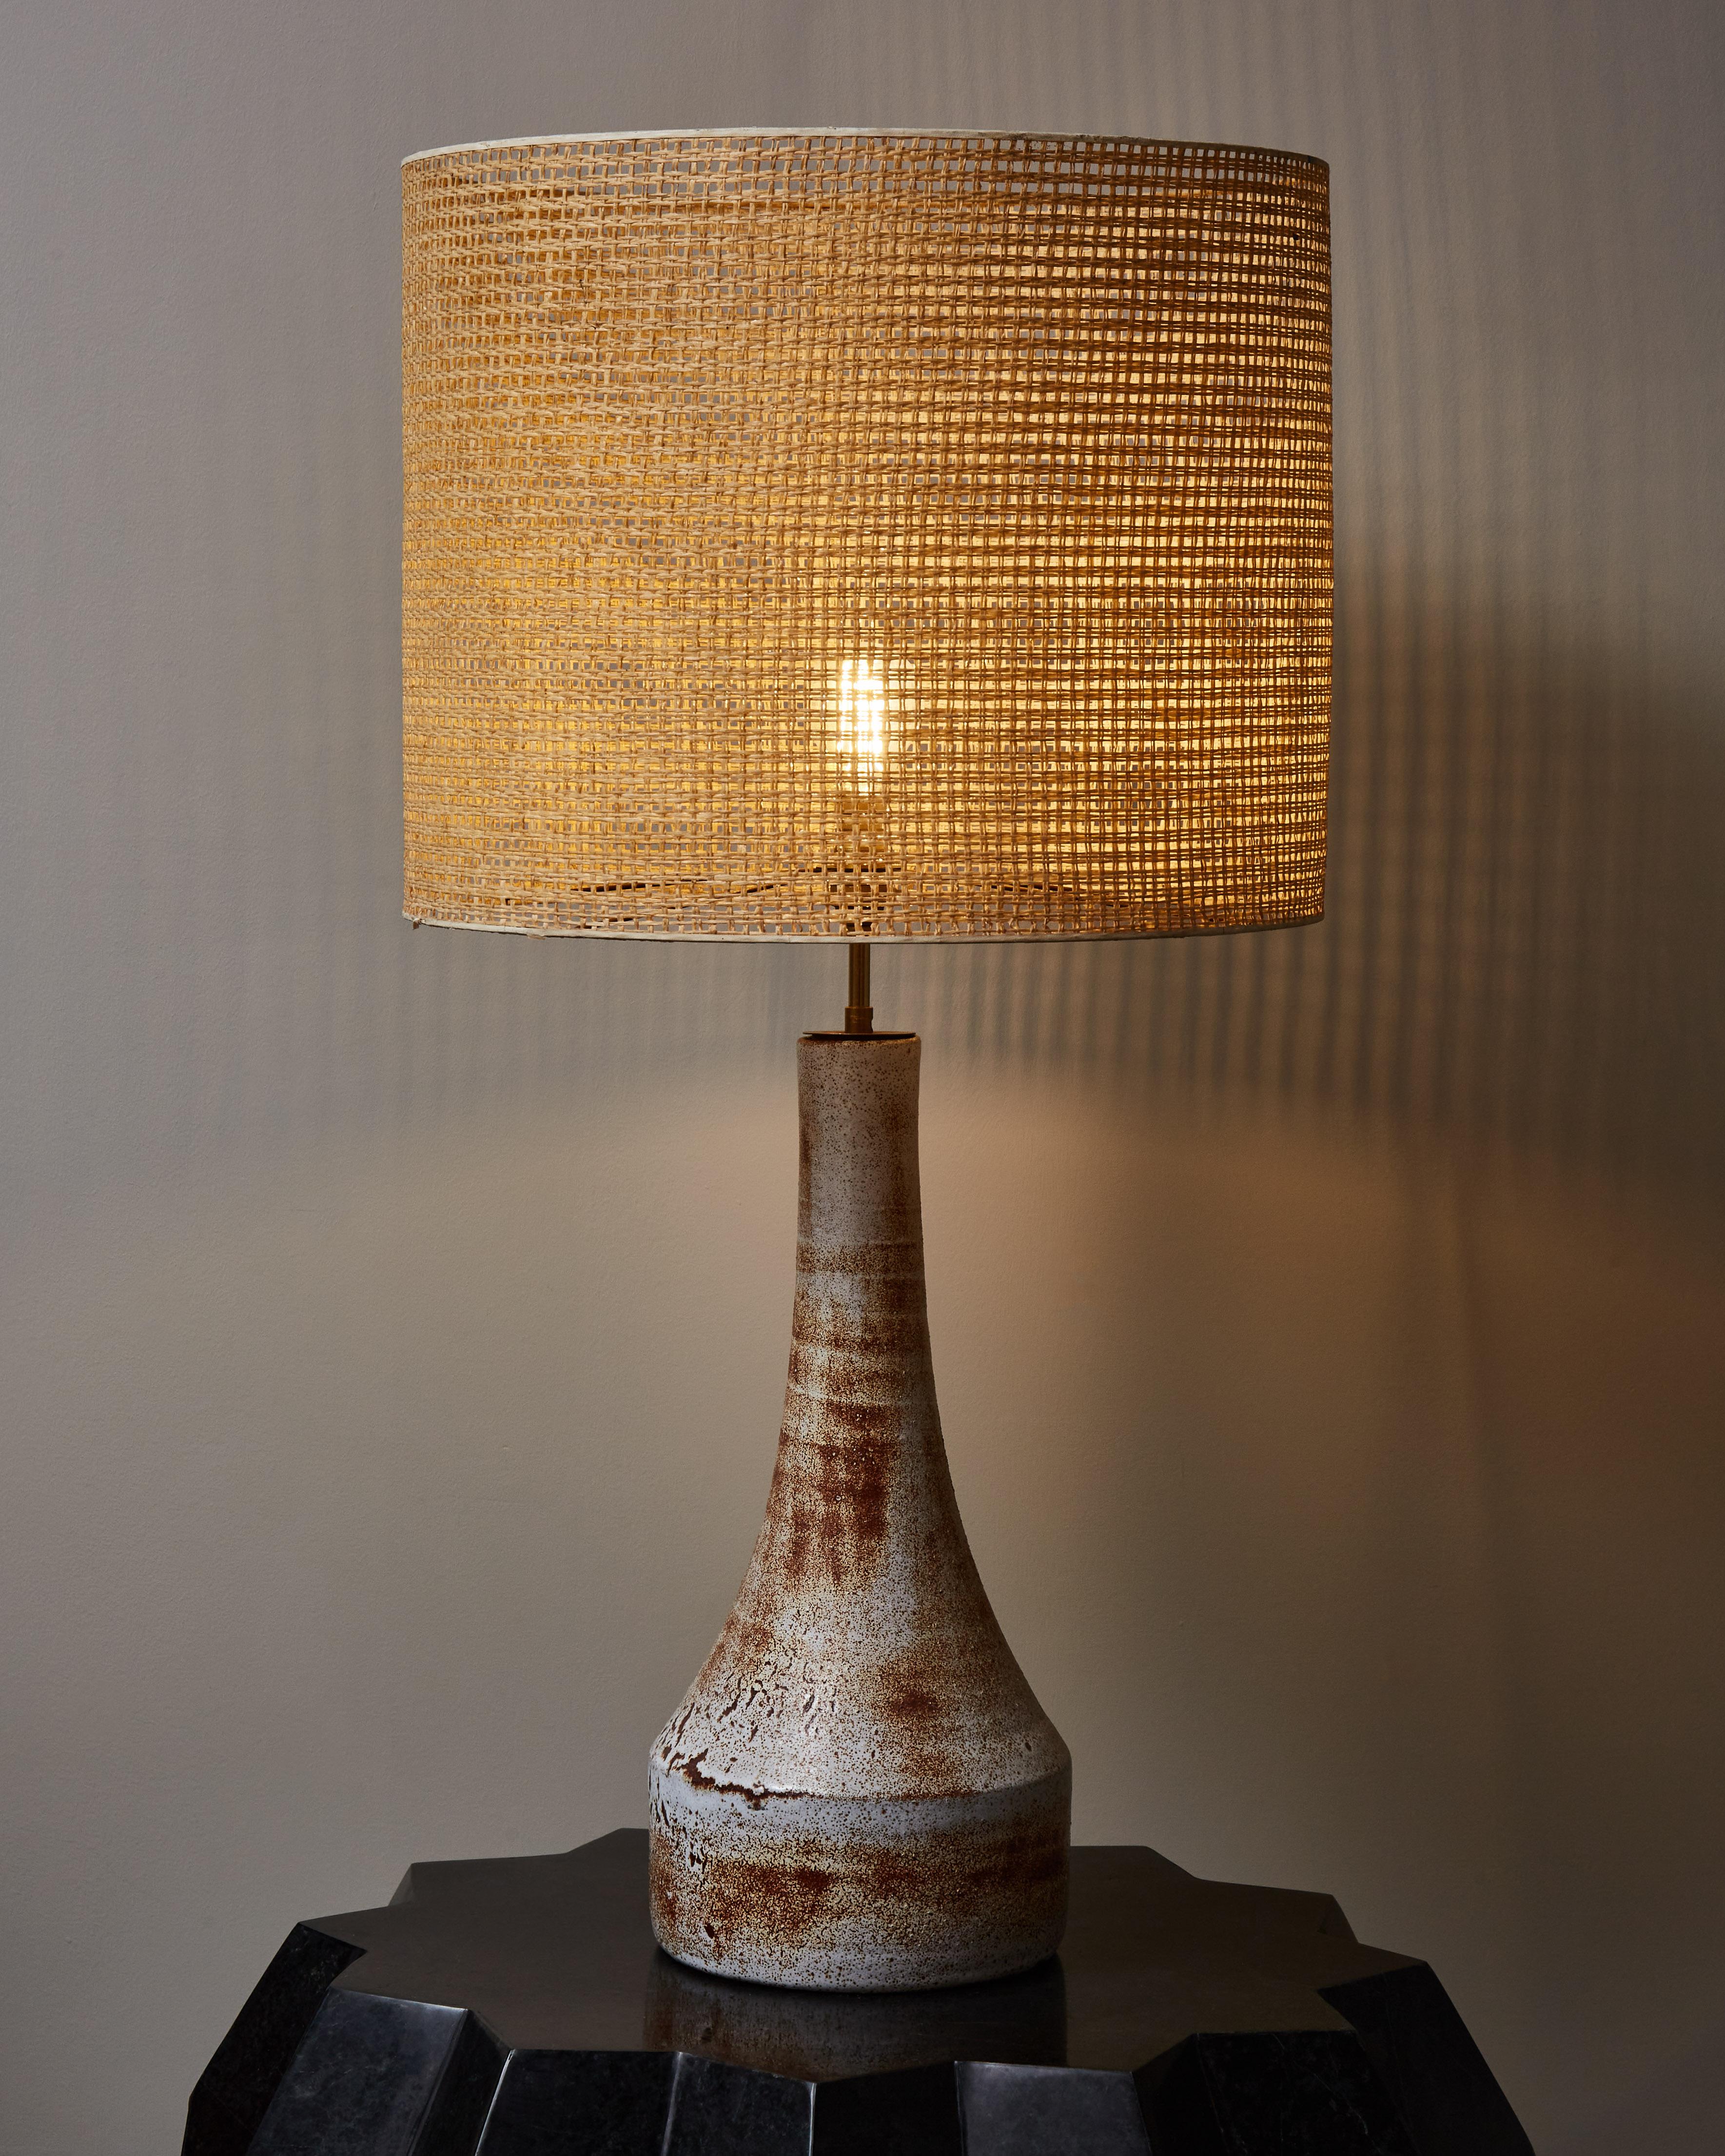 Grande lampe de table en céramique en forme d'entonnoir émaillée en blanc et brun.
Abat-jour original en osier.